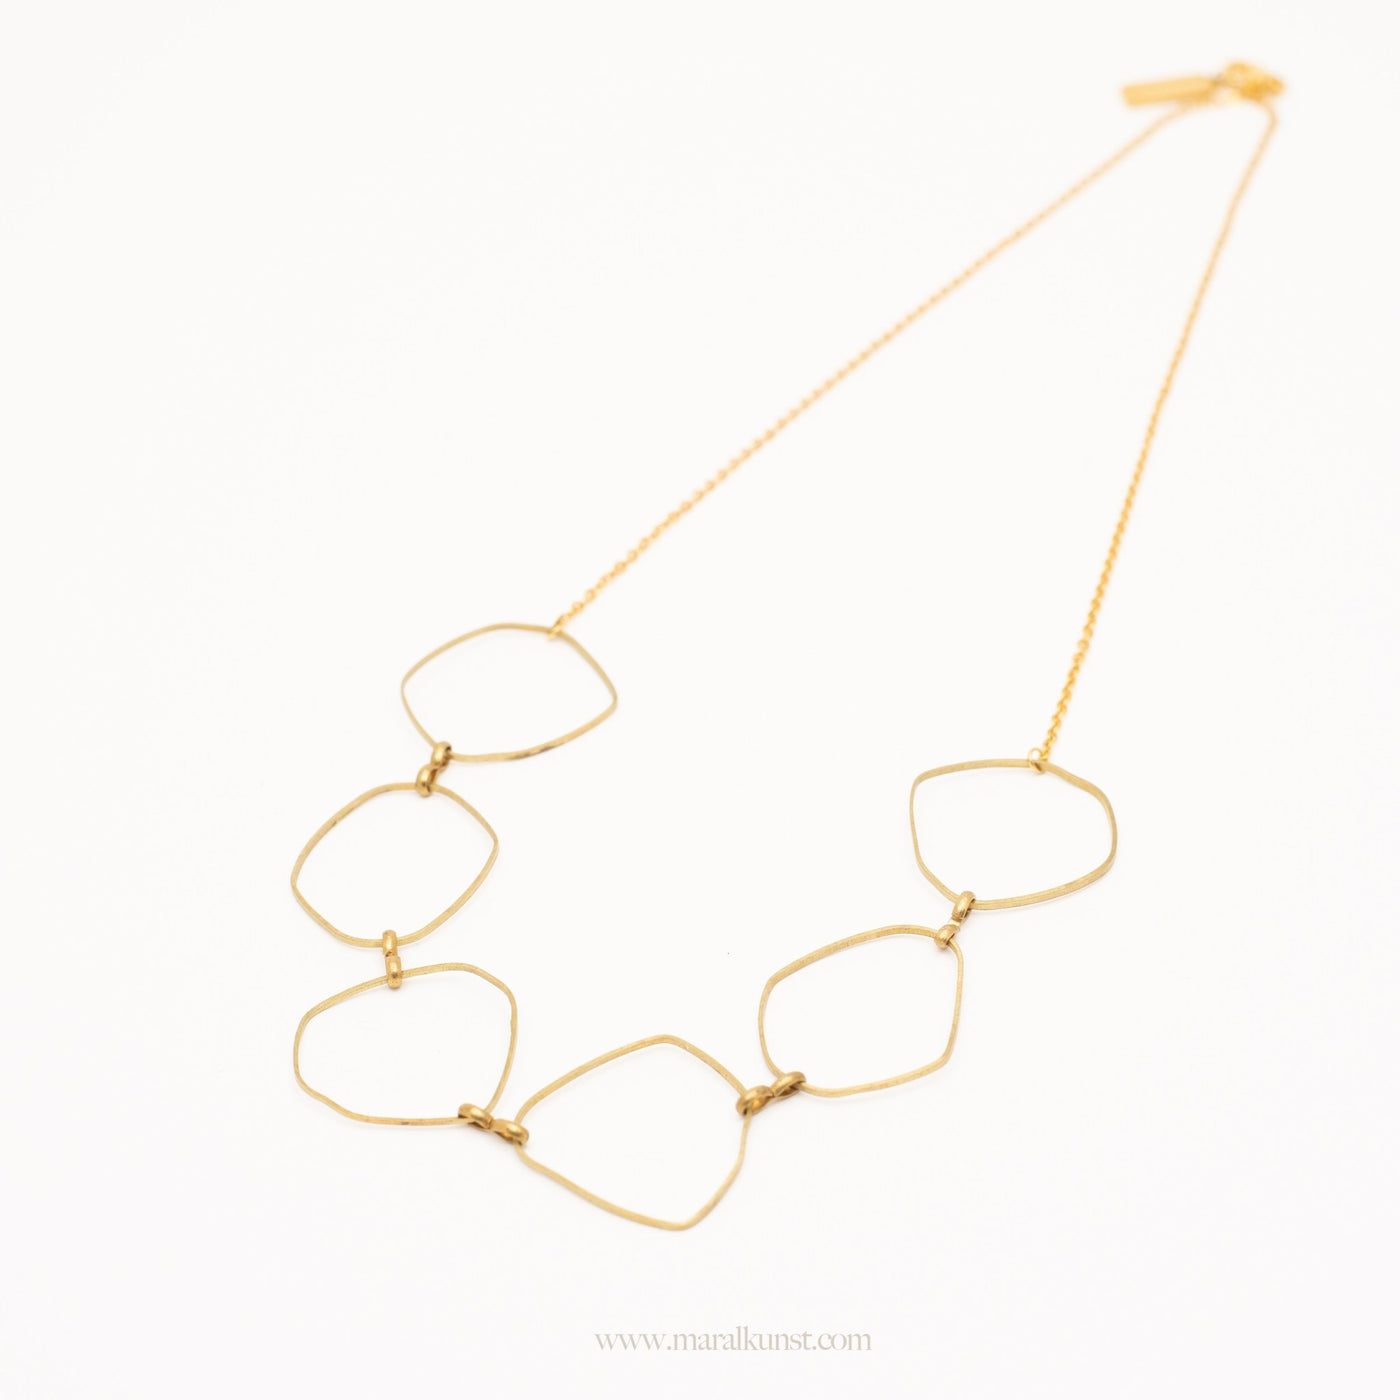 Deformed brass steel chain - Maral Kunst Jewelry